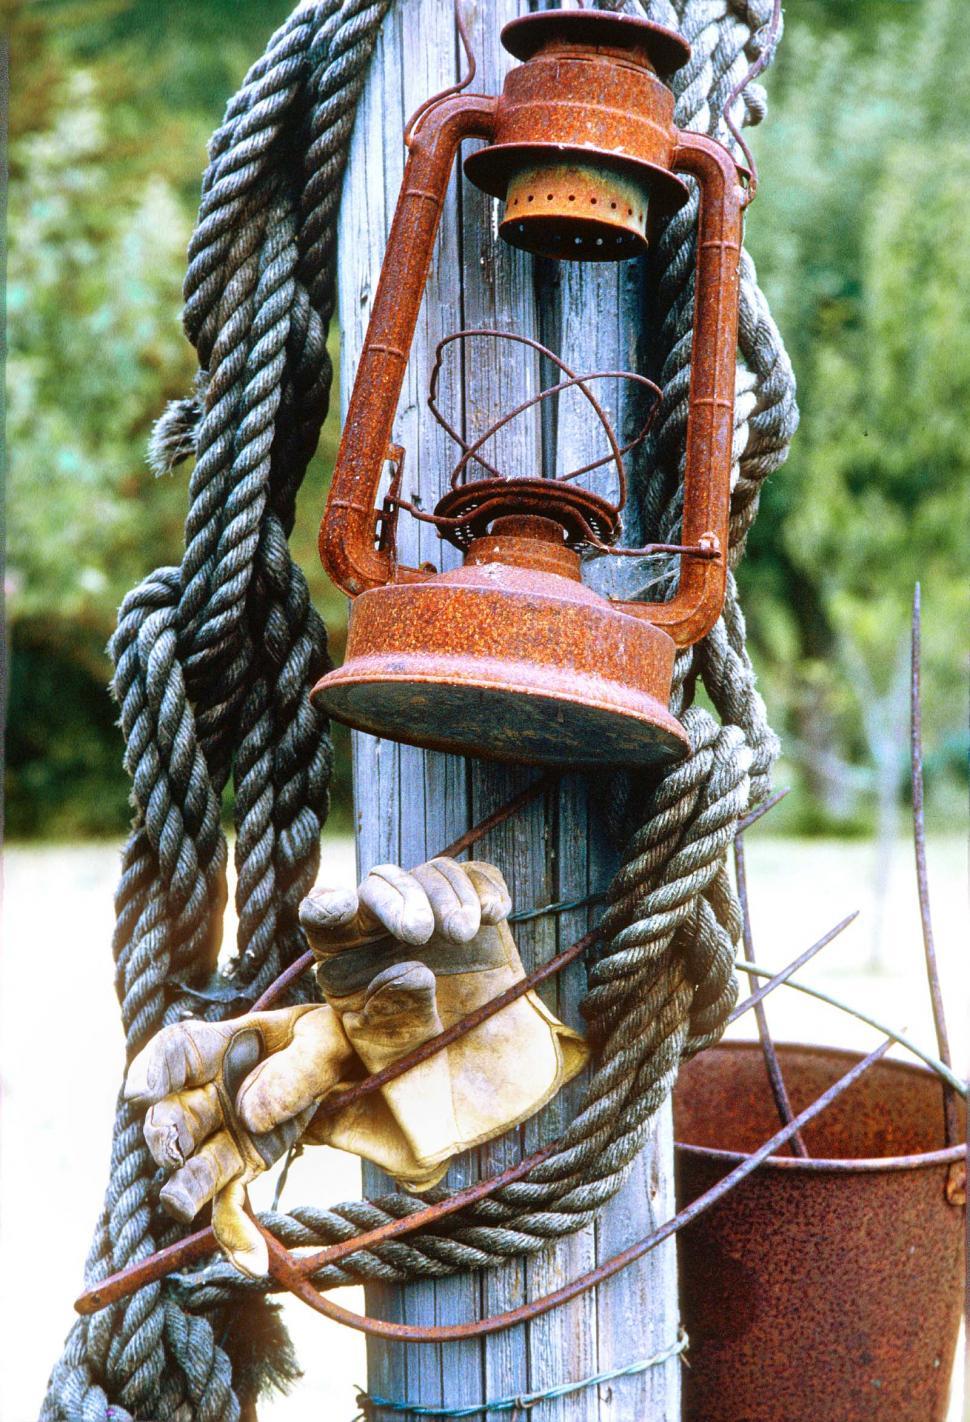 Free Image of Old lantern, rope, gloves 